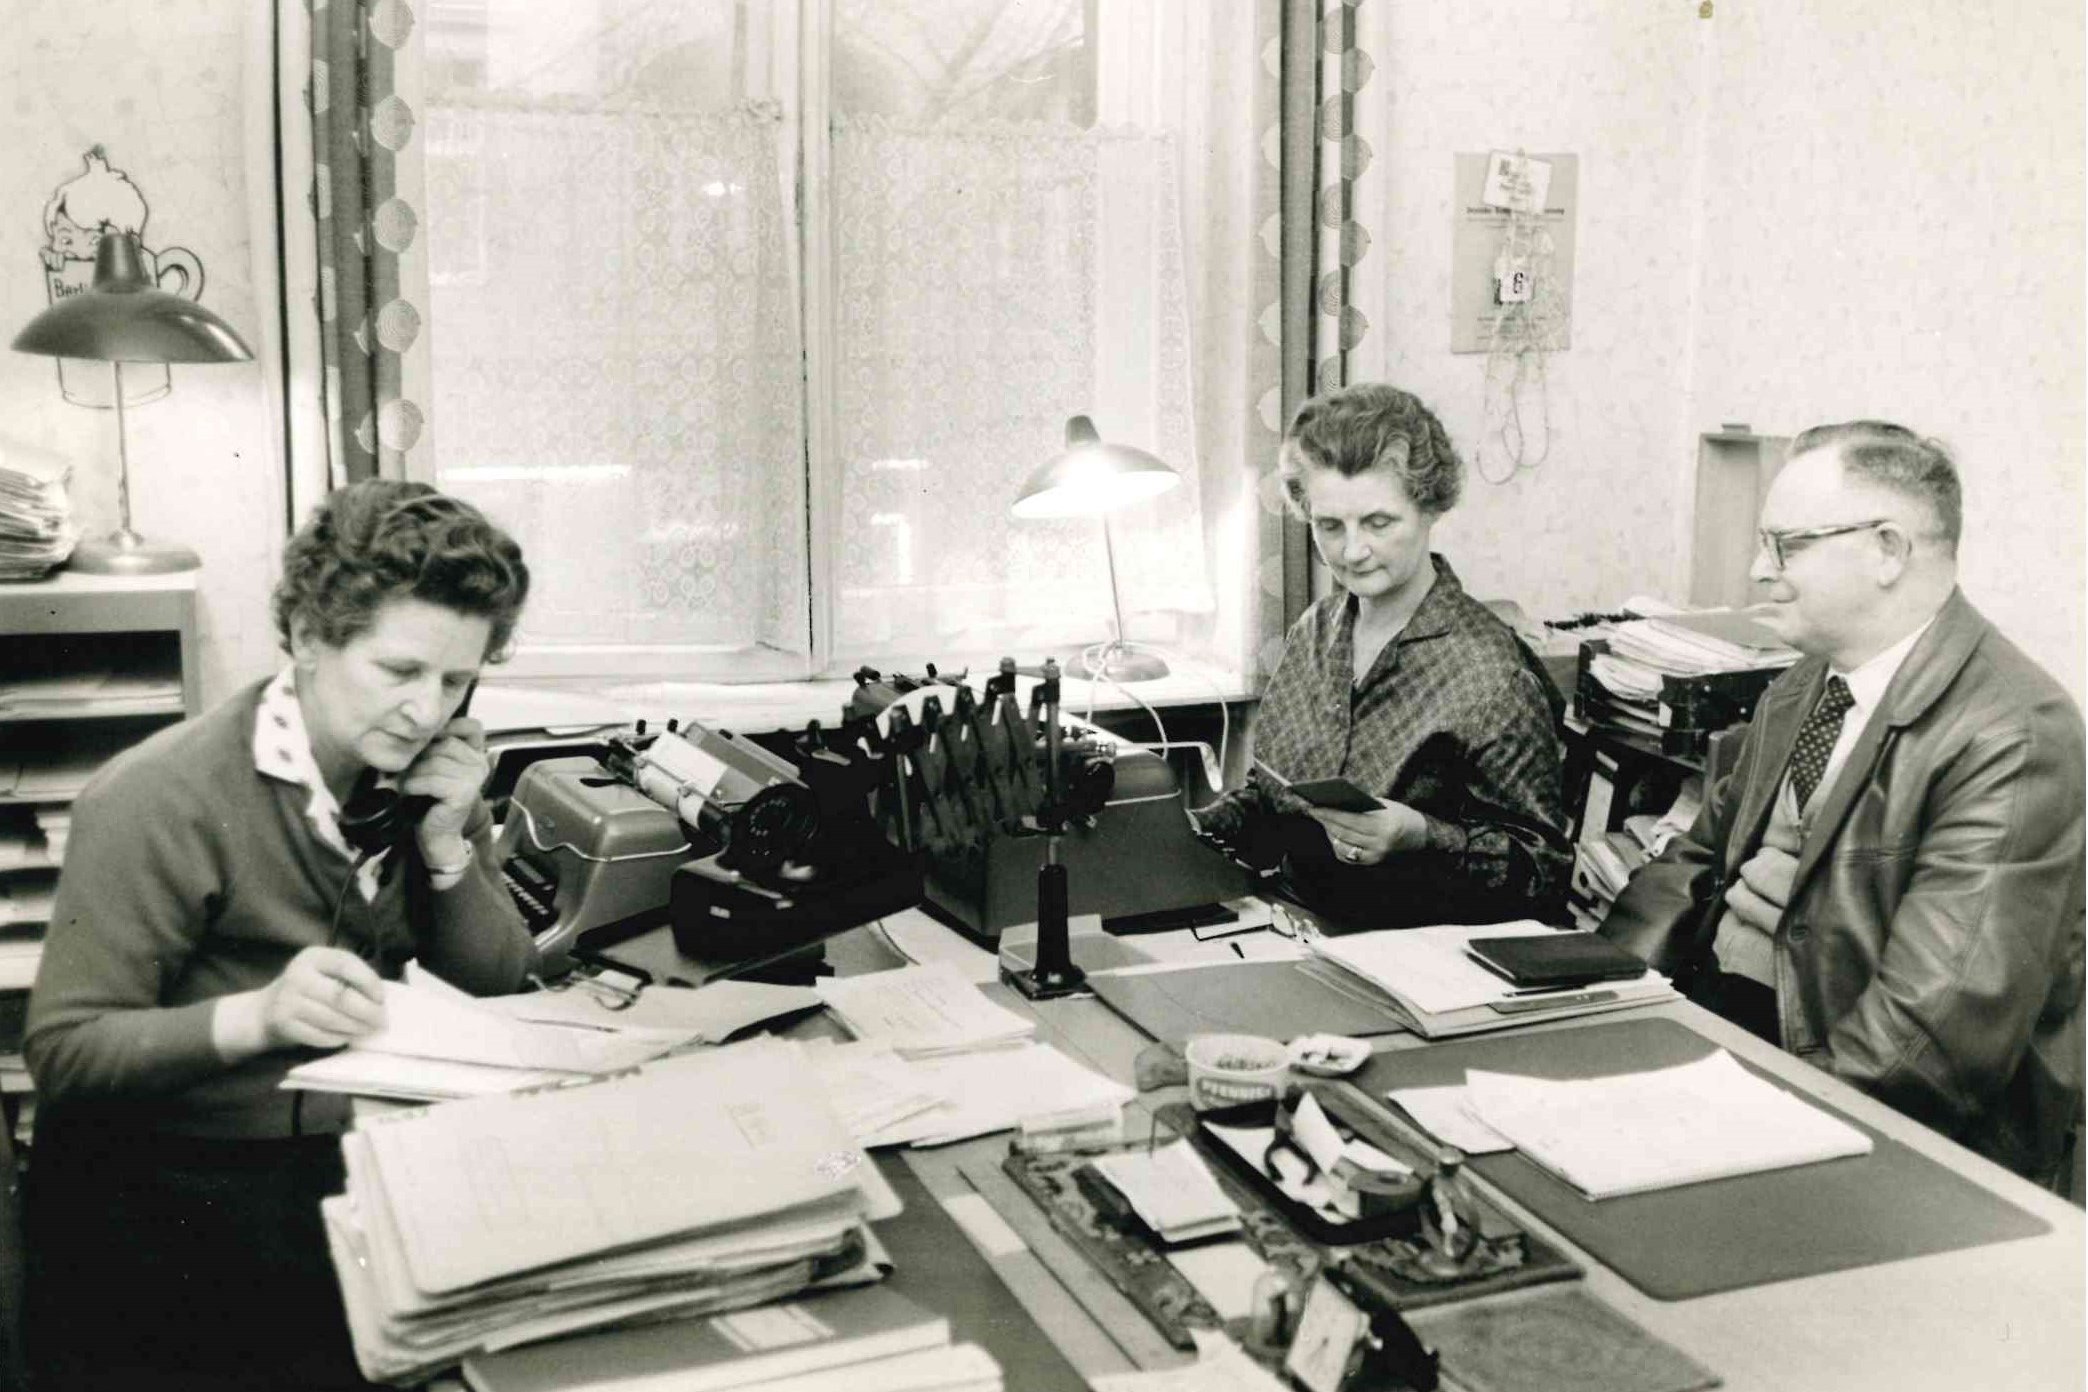 Auf dem Foto sind Mitarbeitende des VdK im Büro an der Schreibmaschine zu sehen. Das Bild stammt aus den 1950/60ern.